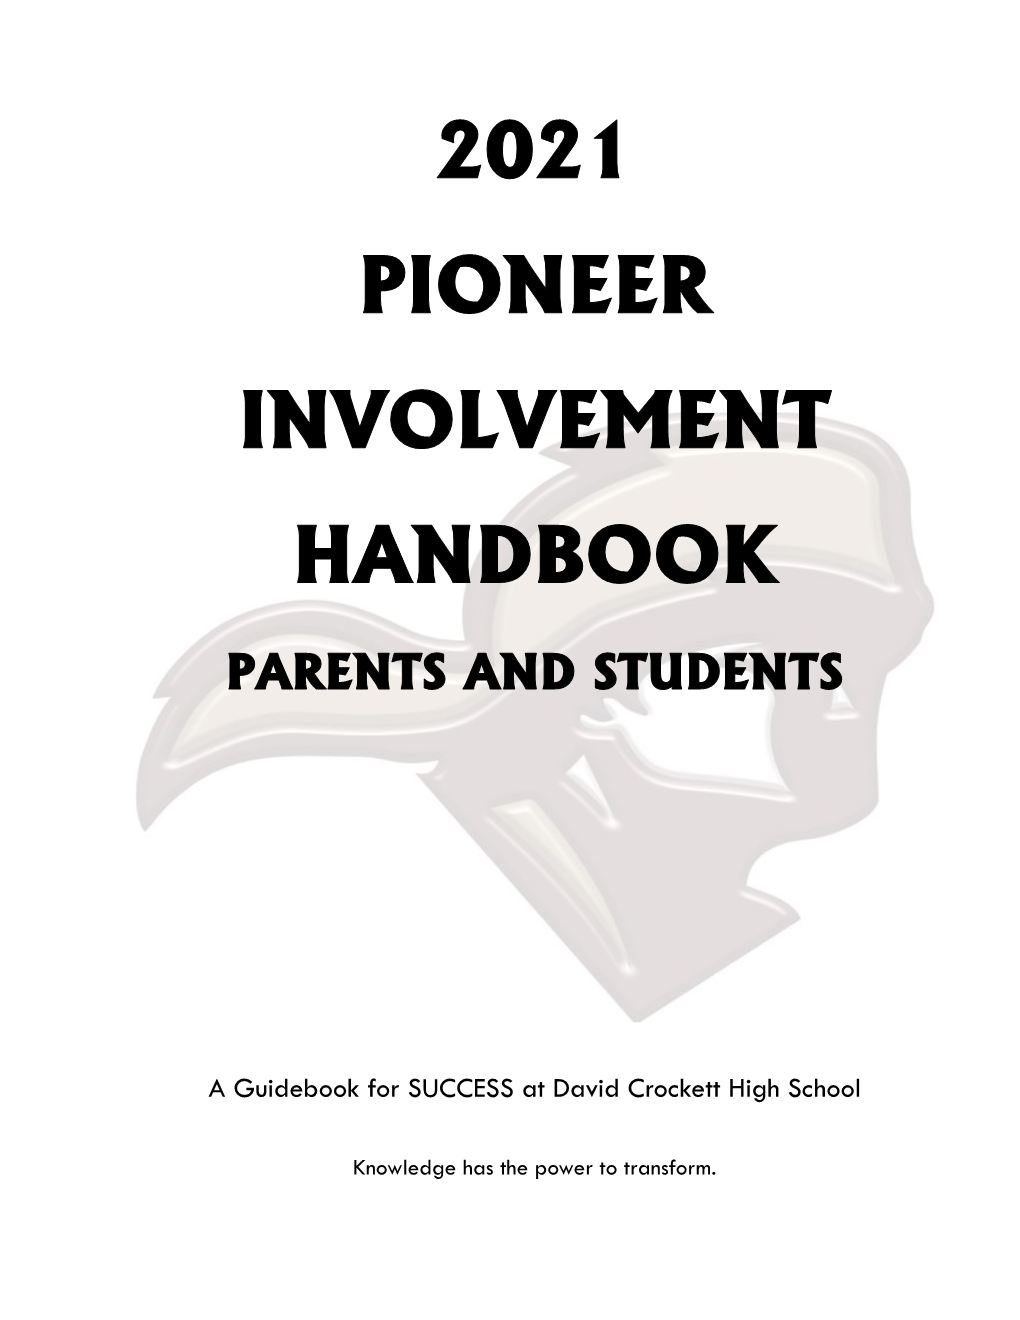 2021 Pioneer Involvement Handbook